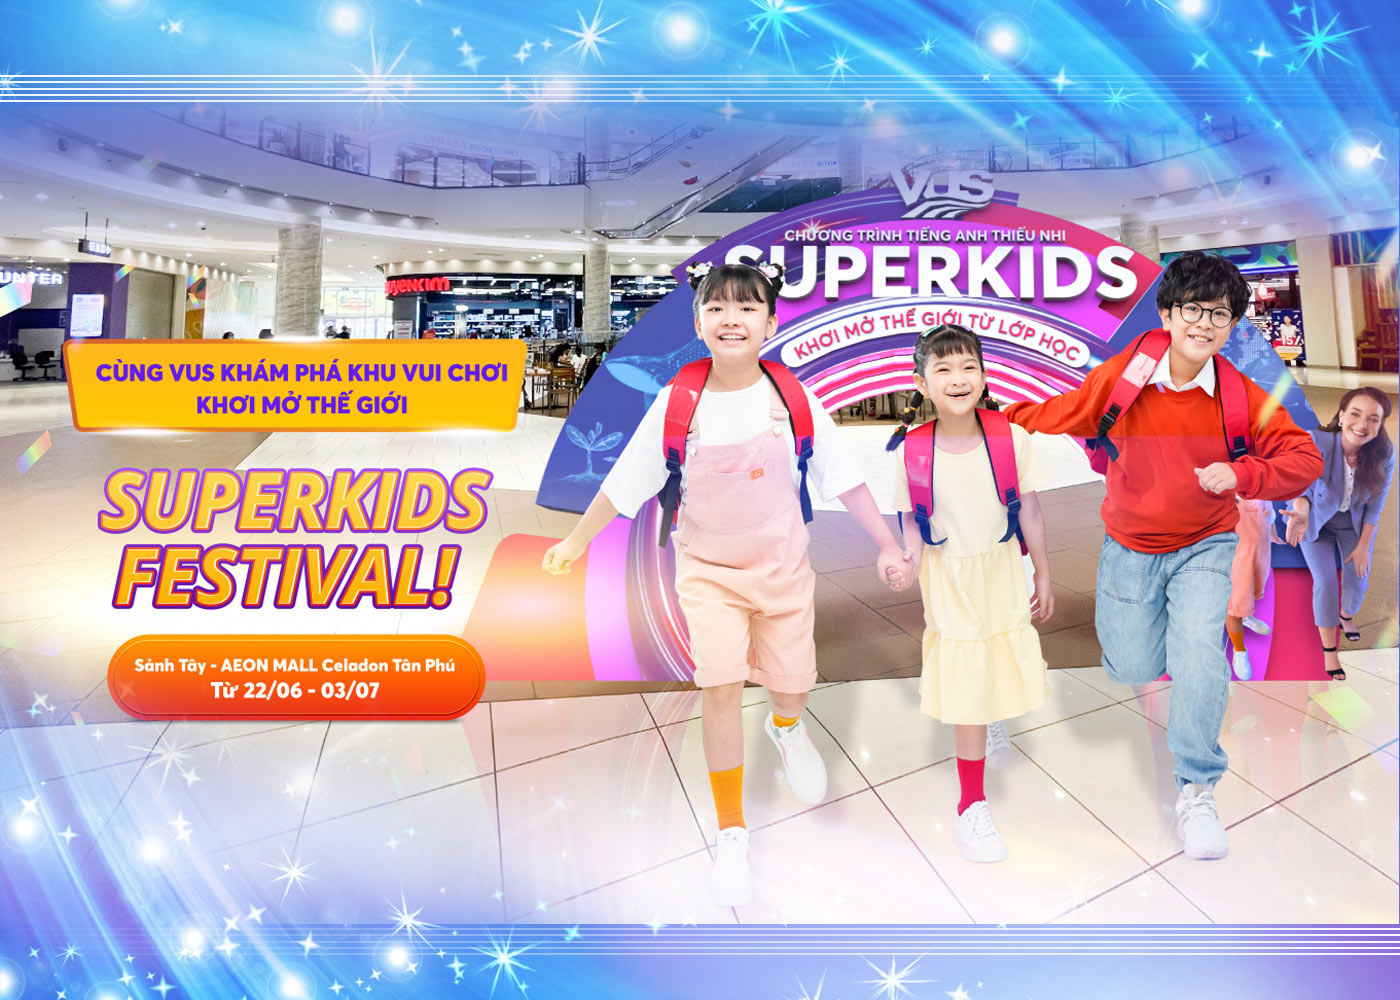 VUS tổ chức khu vui chơi trải nghiệm thực tế SuperKids Festival - Ảnh 1